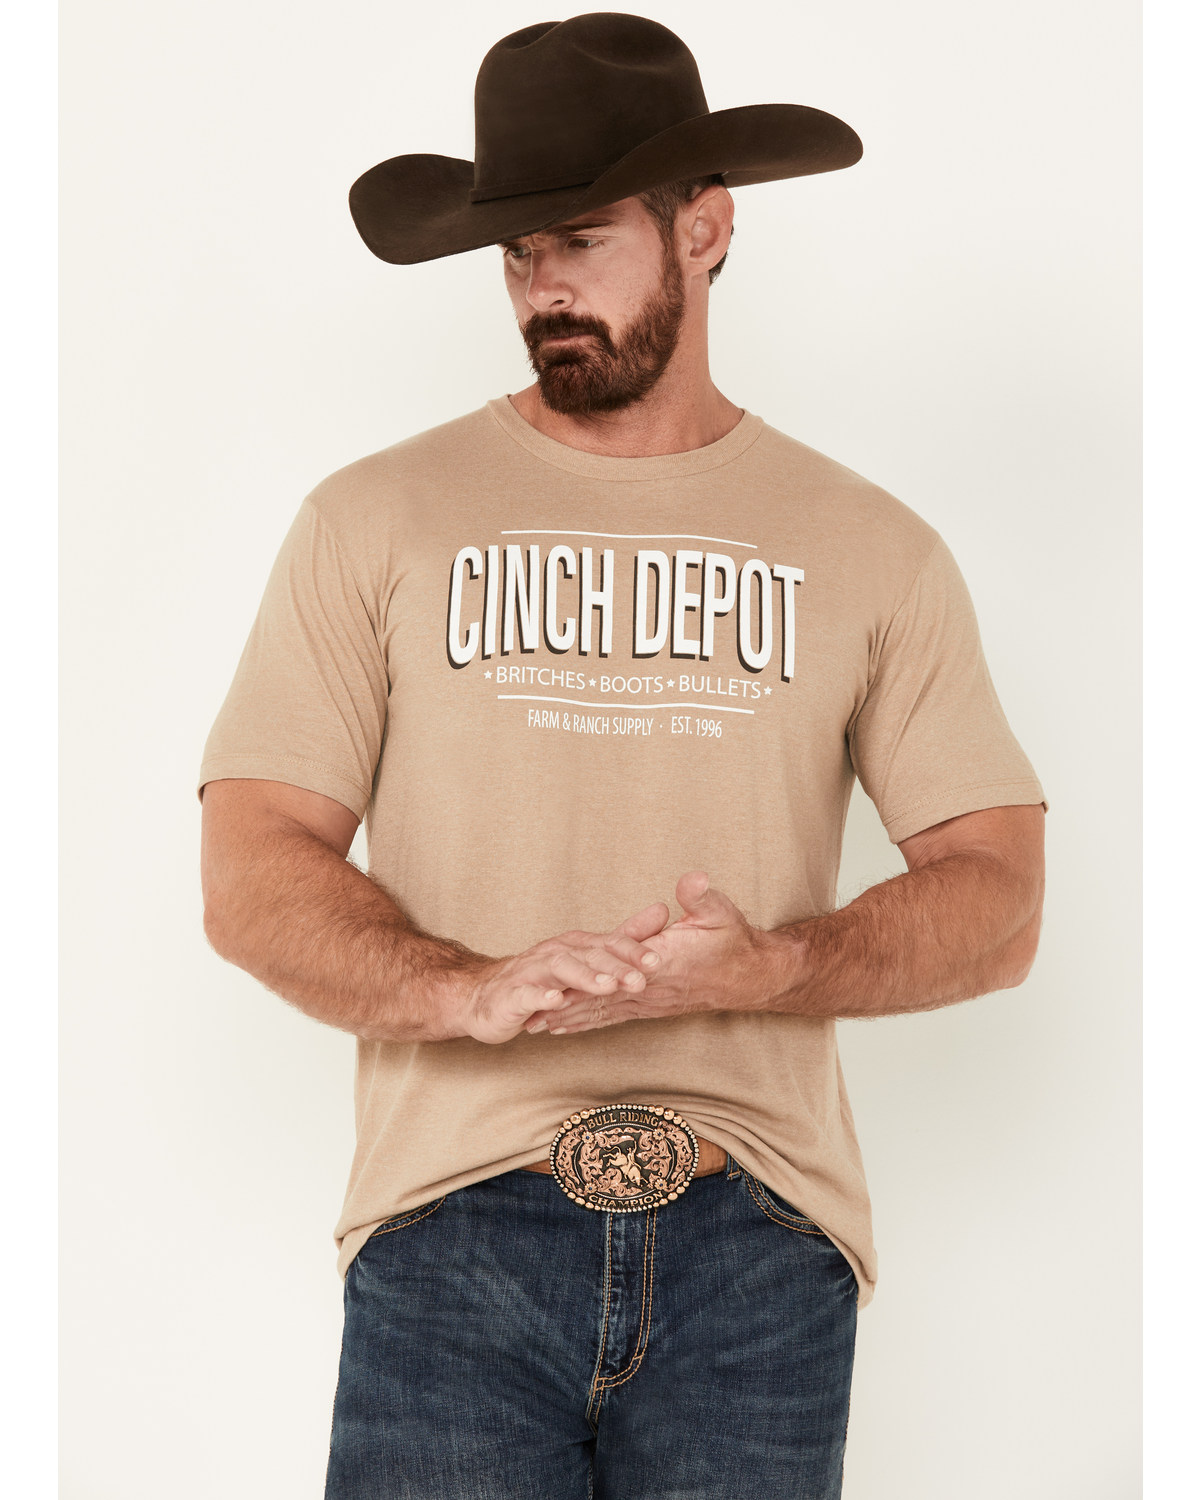 Cinch Men's Depot Short Sleeve Graphic T-Shirt